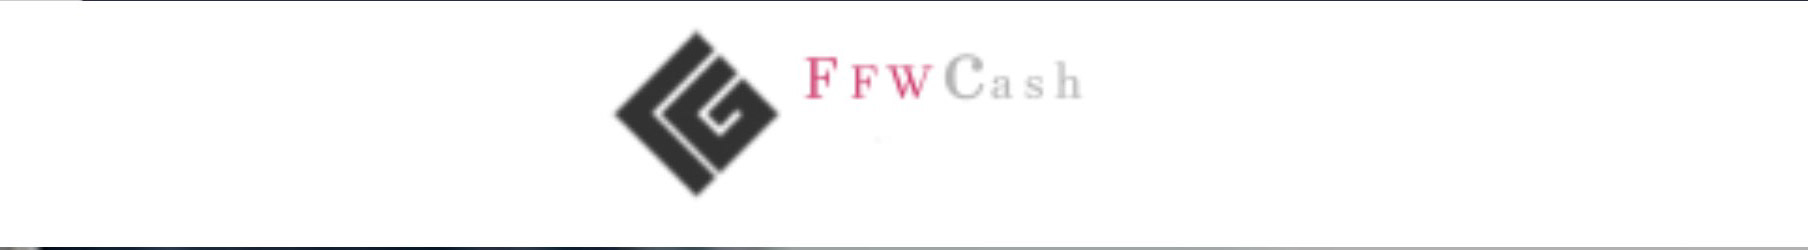 Ffwcash RU's profile banner